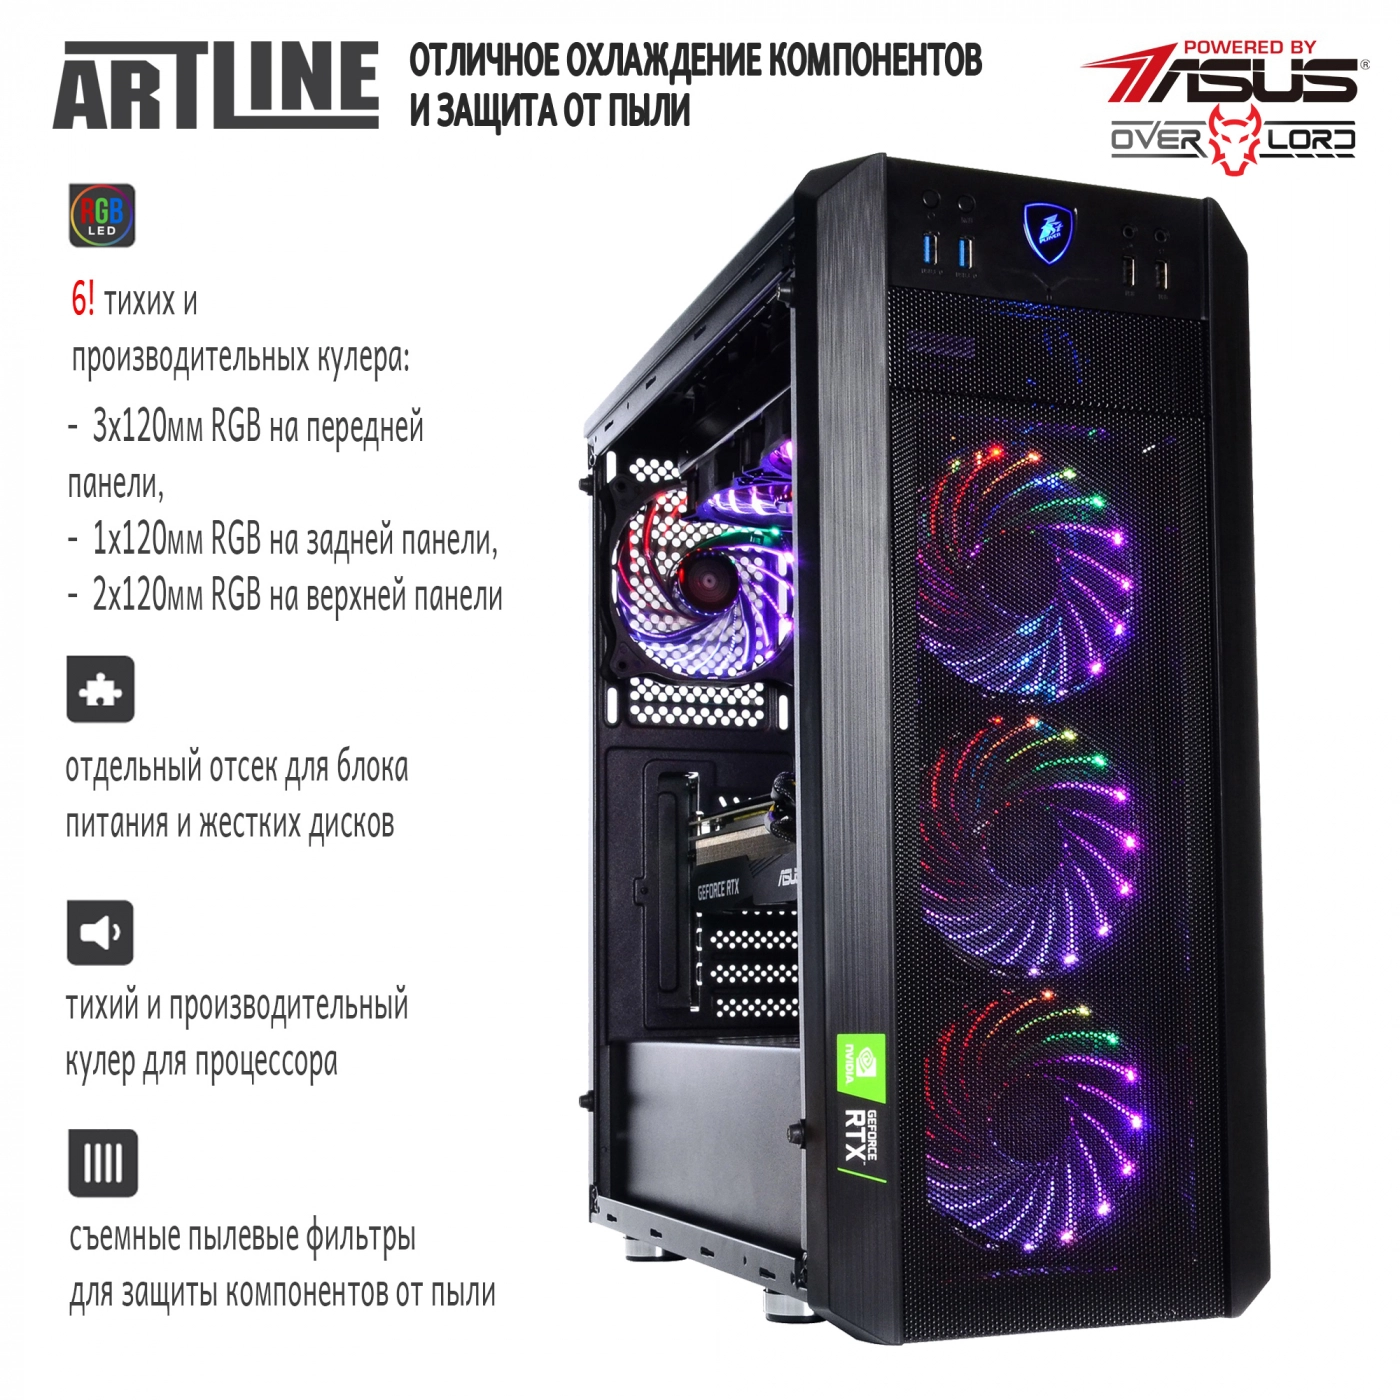 Купить Компьютер ARTLINE Gaming X97v23 - фото 4